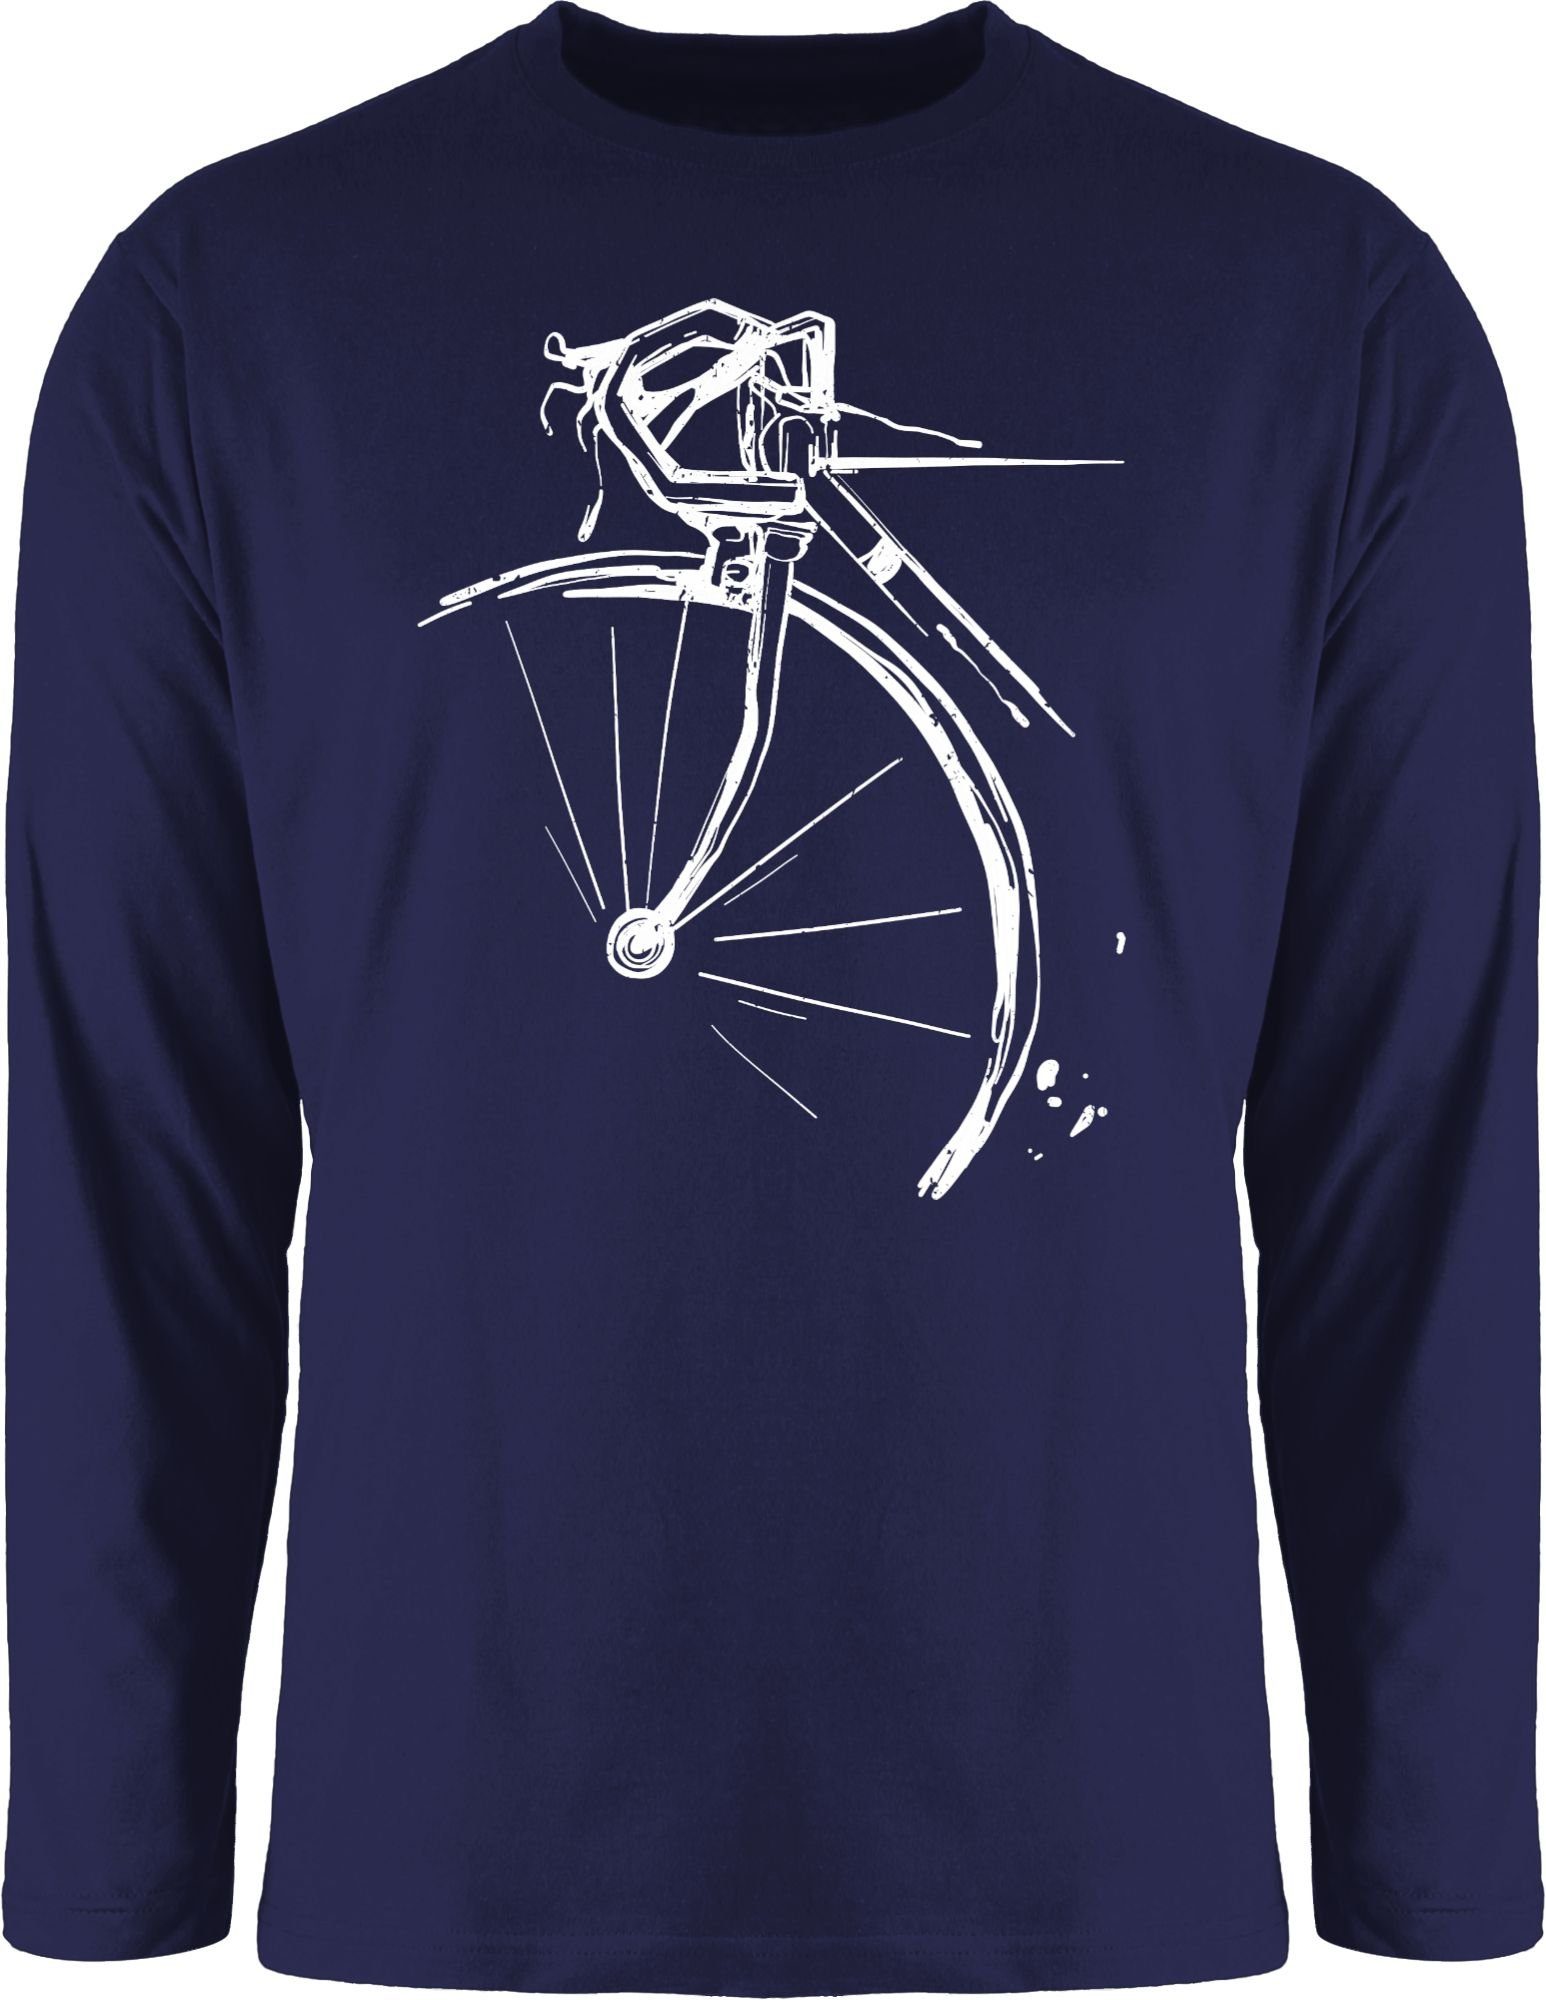 Blau 1 Rennrad Shirtracer Rundhalsshirt Navy Fahrrad Fahrrad Bekleidung Radsport